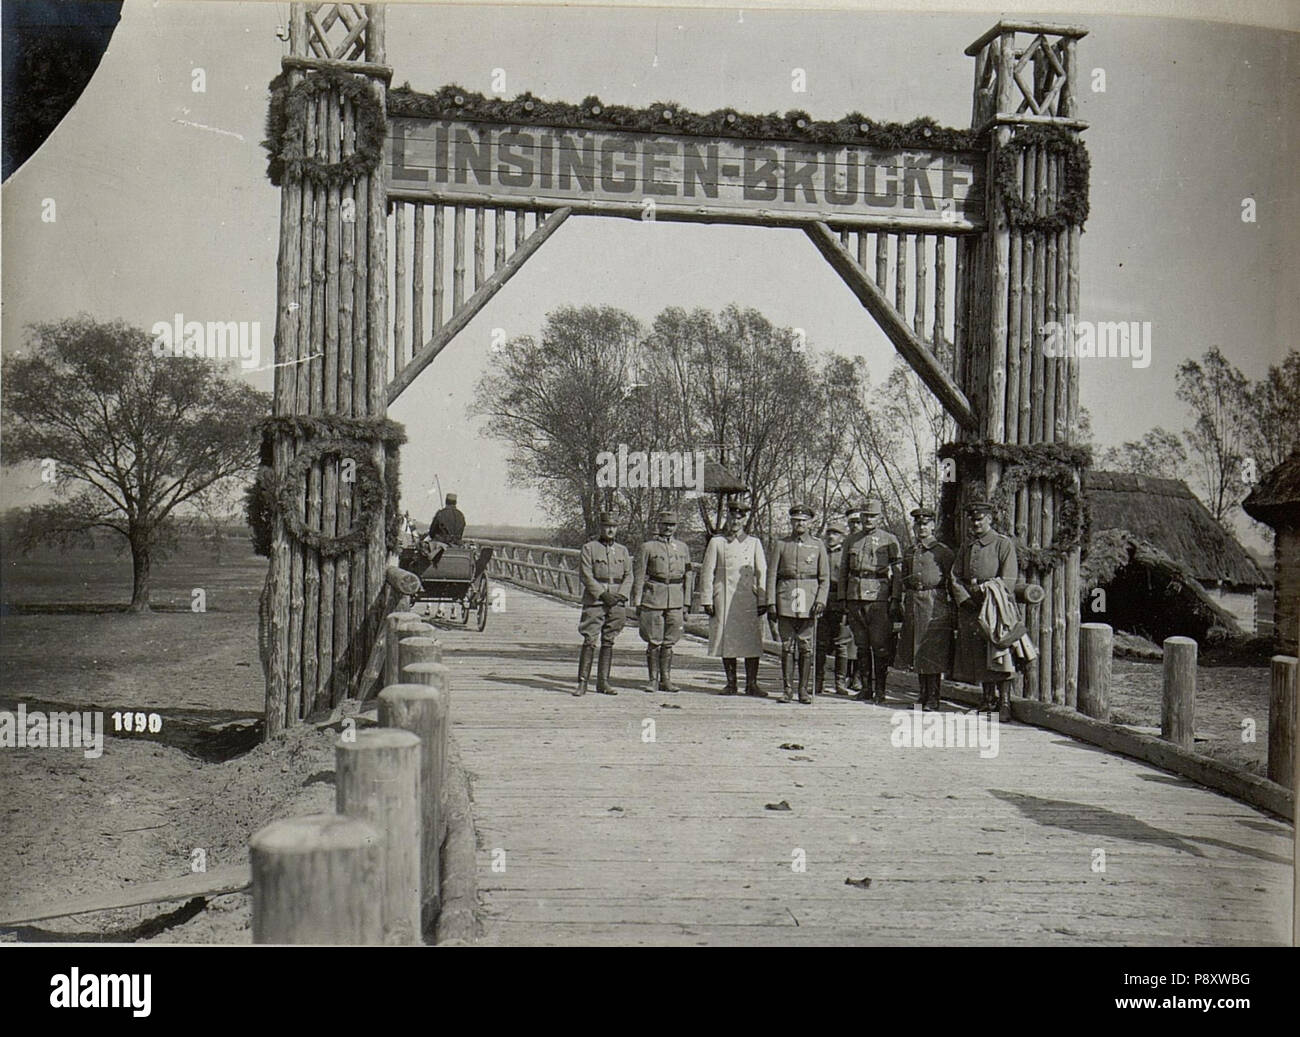 299 General von Linsingen posiert bei der nach ihm benannten Brücke (BildID 15685249) Stock Photo